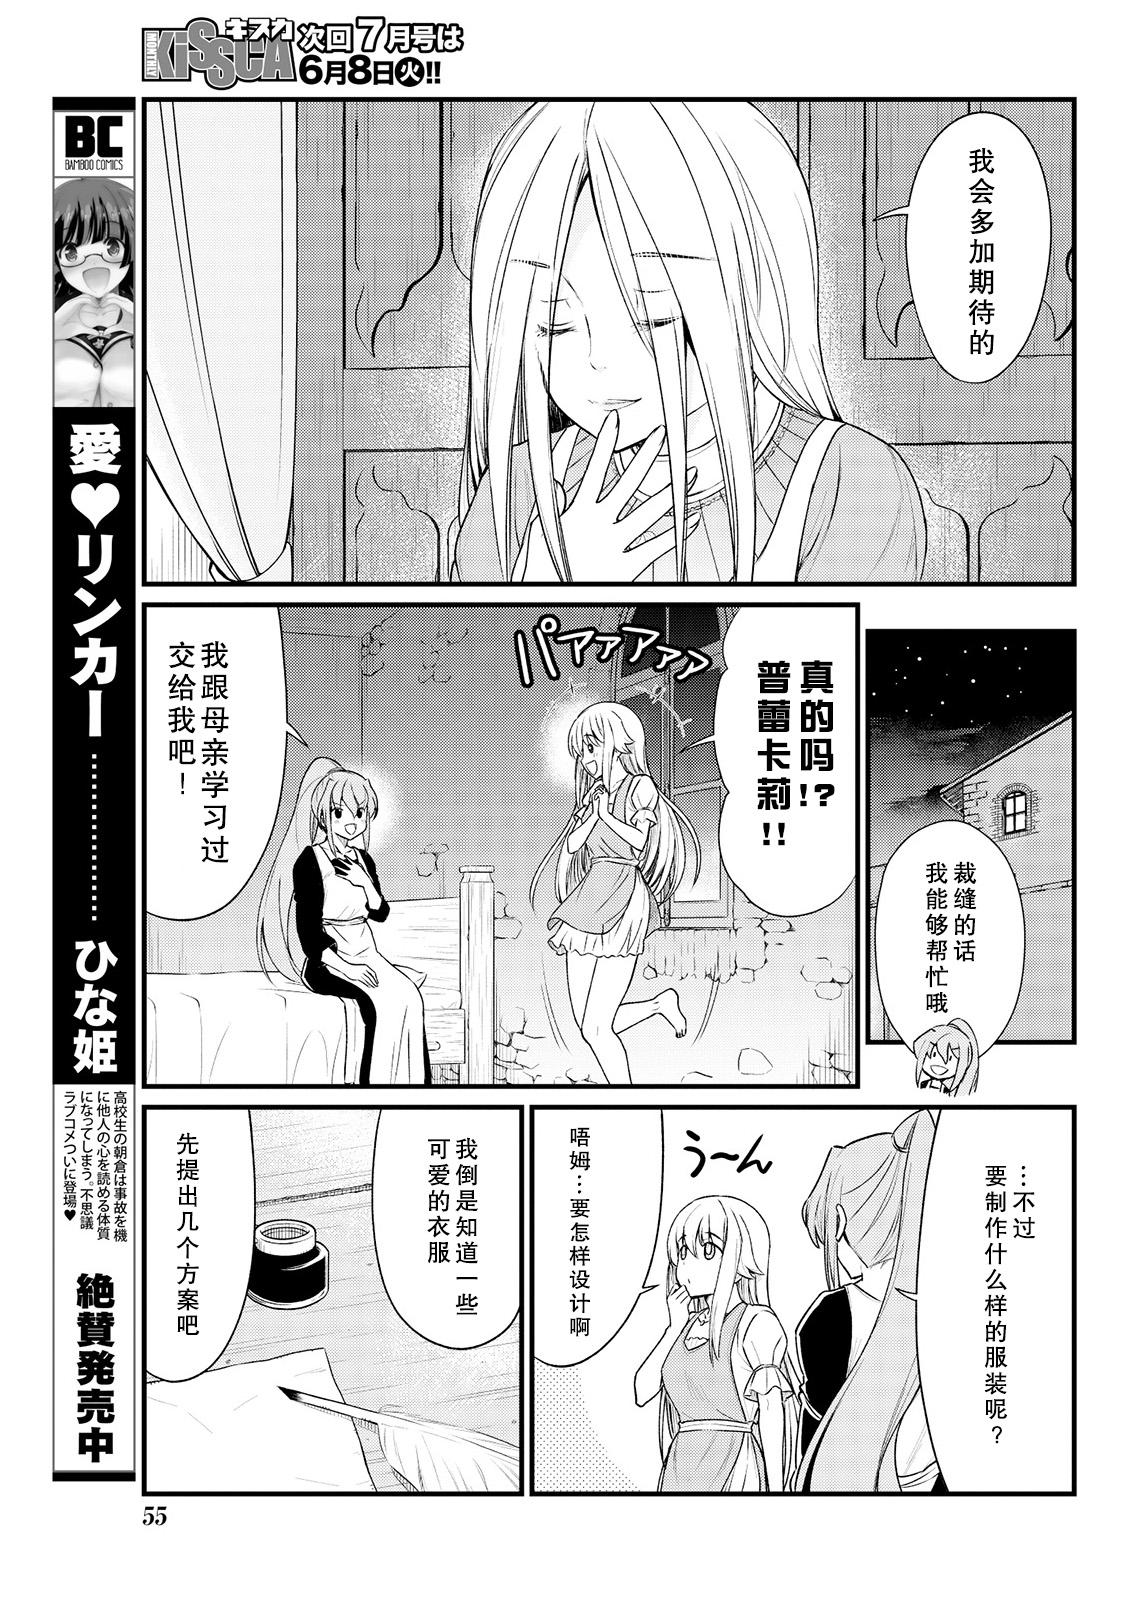 Grandma Kukkorose no Himekishi to nari, Yuri Shoukan de Hataraku koto ni Narimashita. 8 Rabo - Page 9